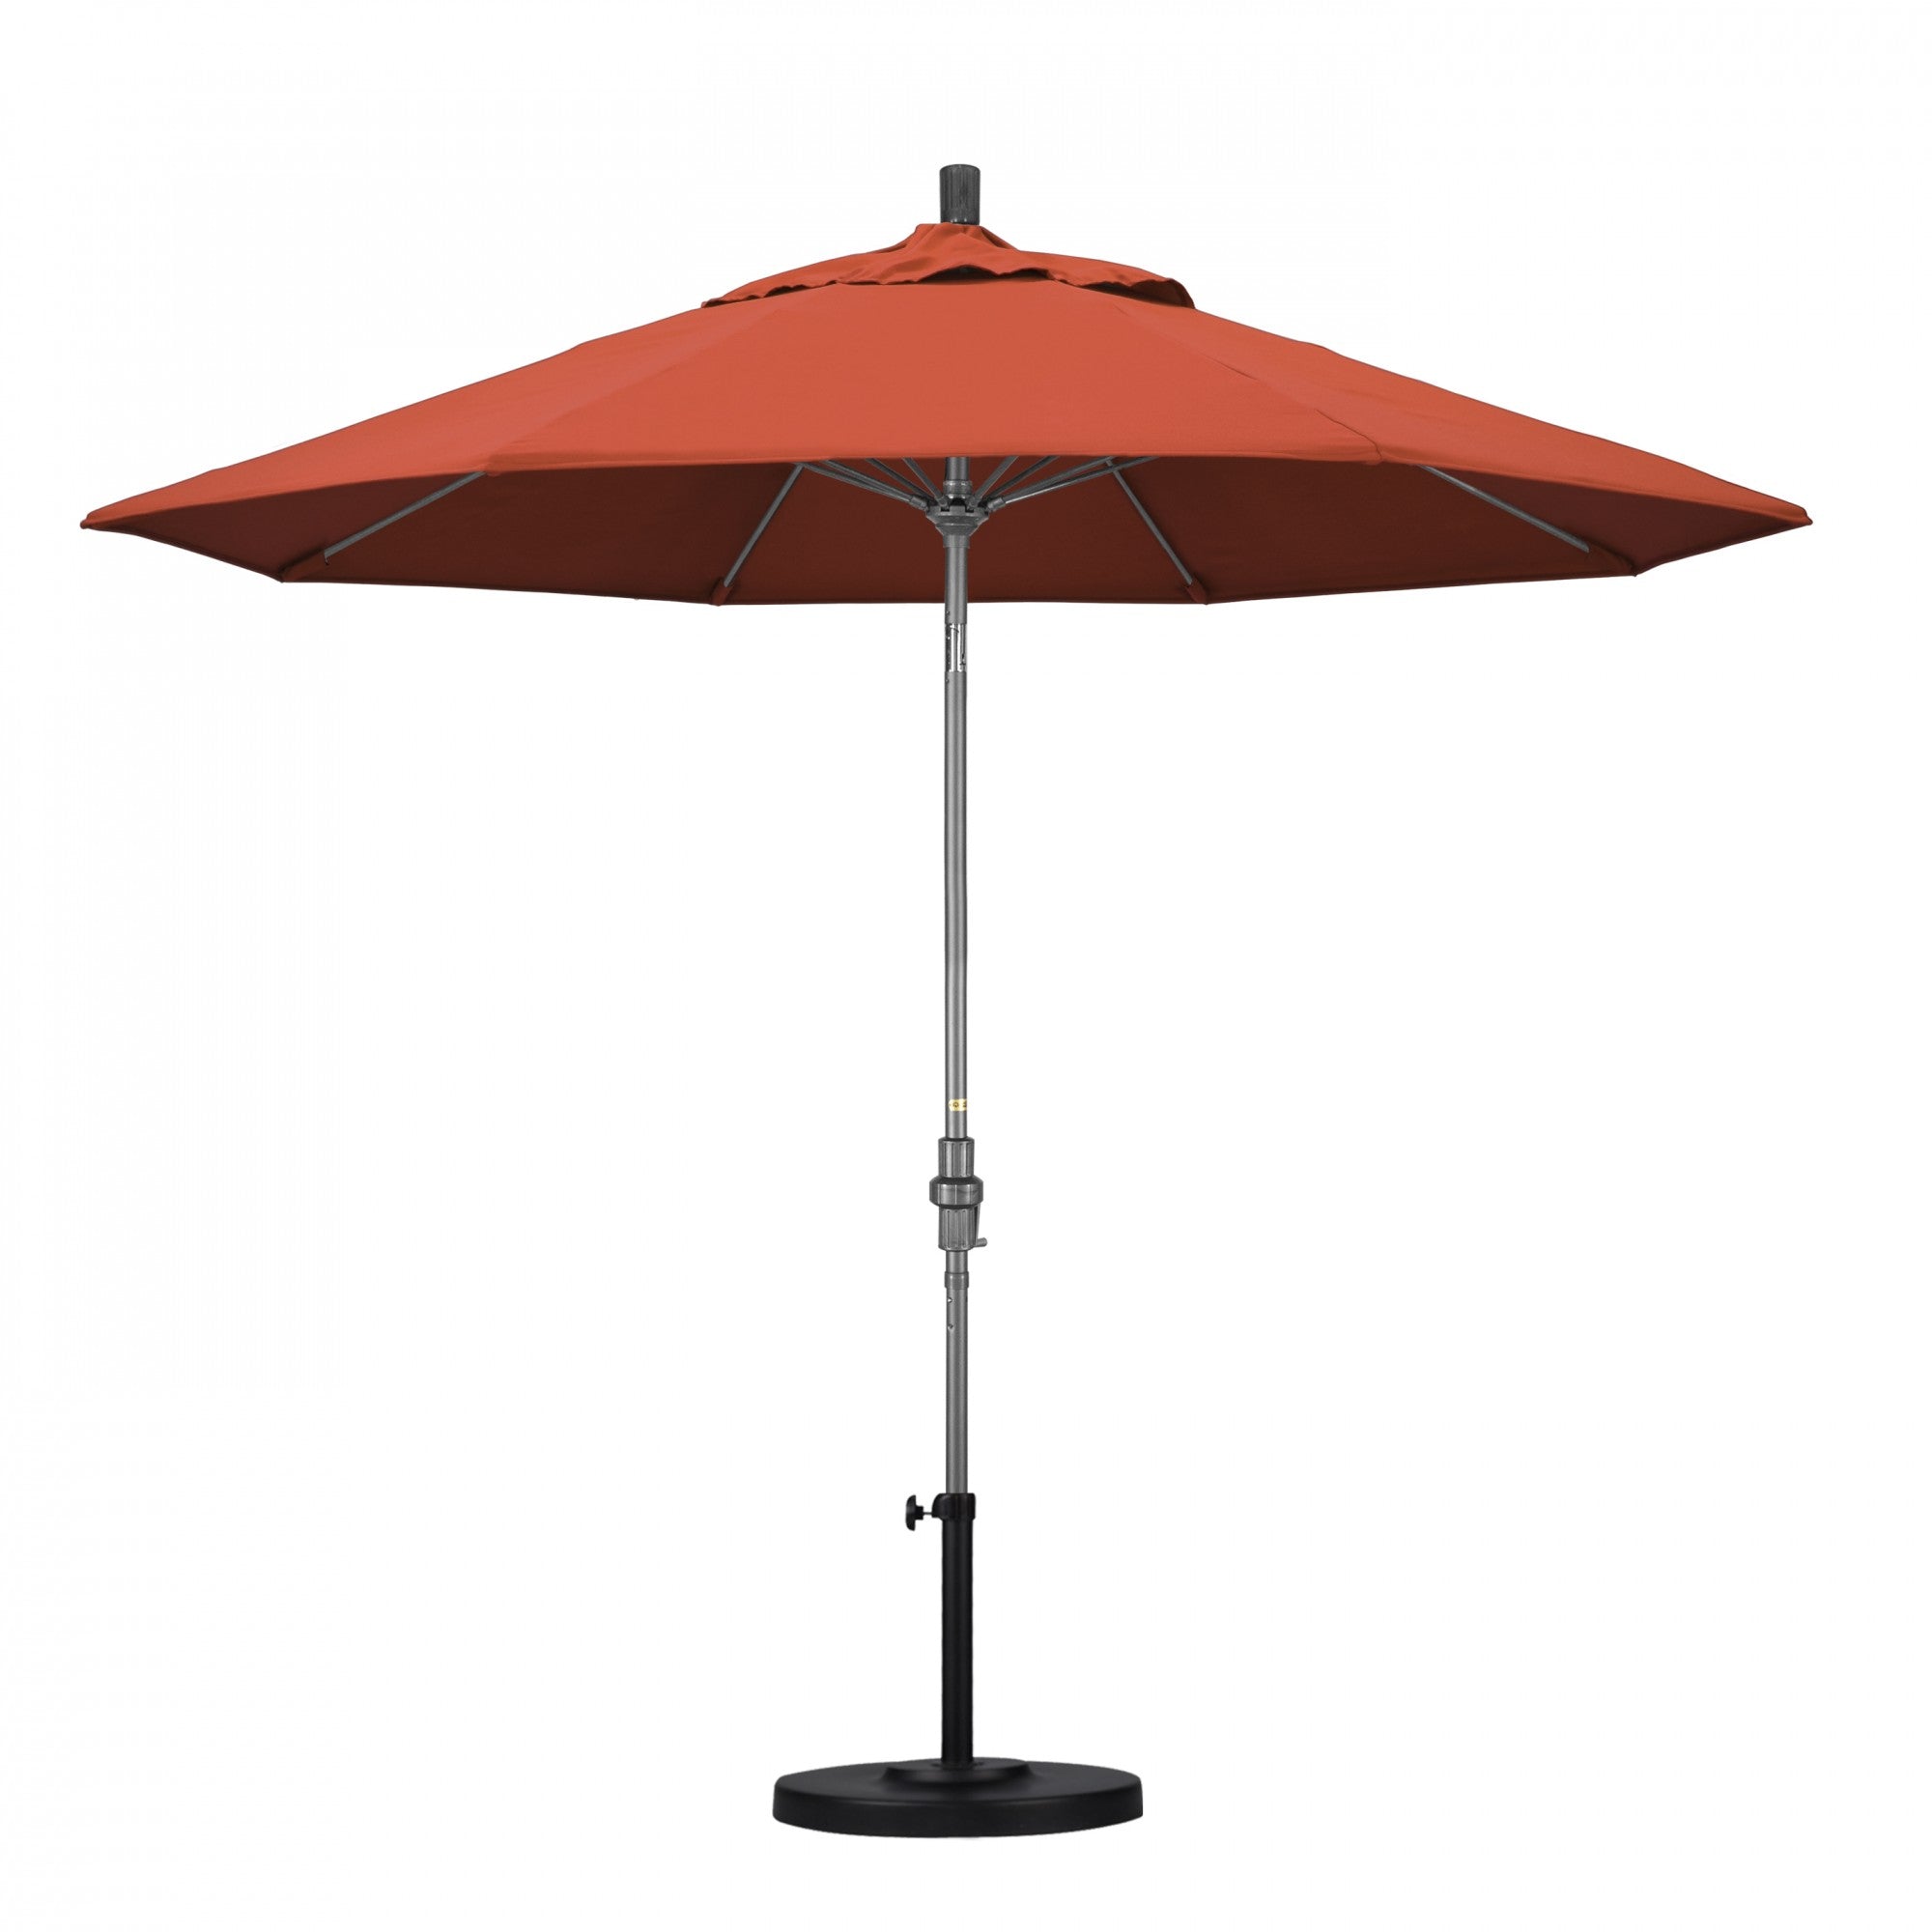 California Umbrella - 9' - Patio Umbrella Umbrella - Aluminum Pole - Sunset - Olefin - GSCUF908010-F27